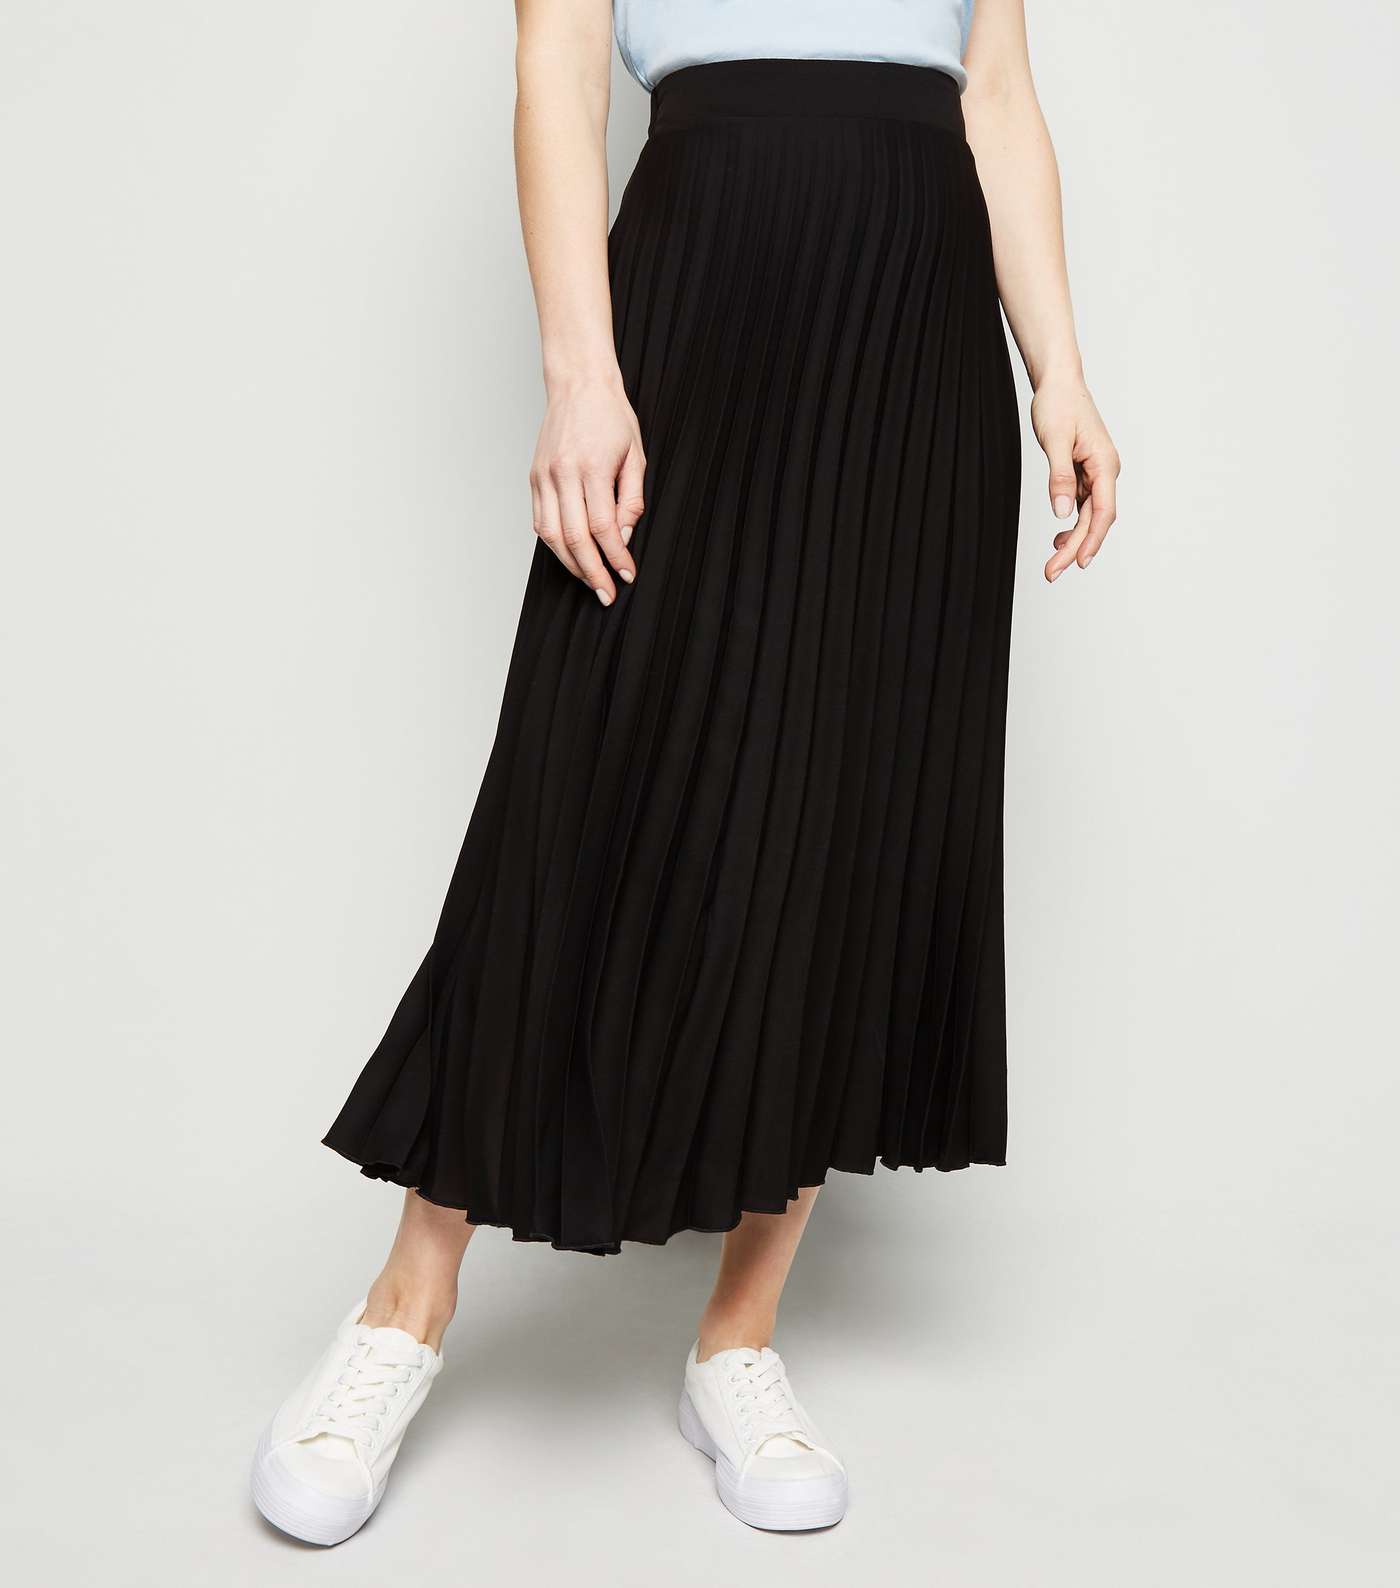 Petite Black Pleated Midi Skirt Image 2